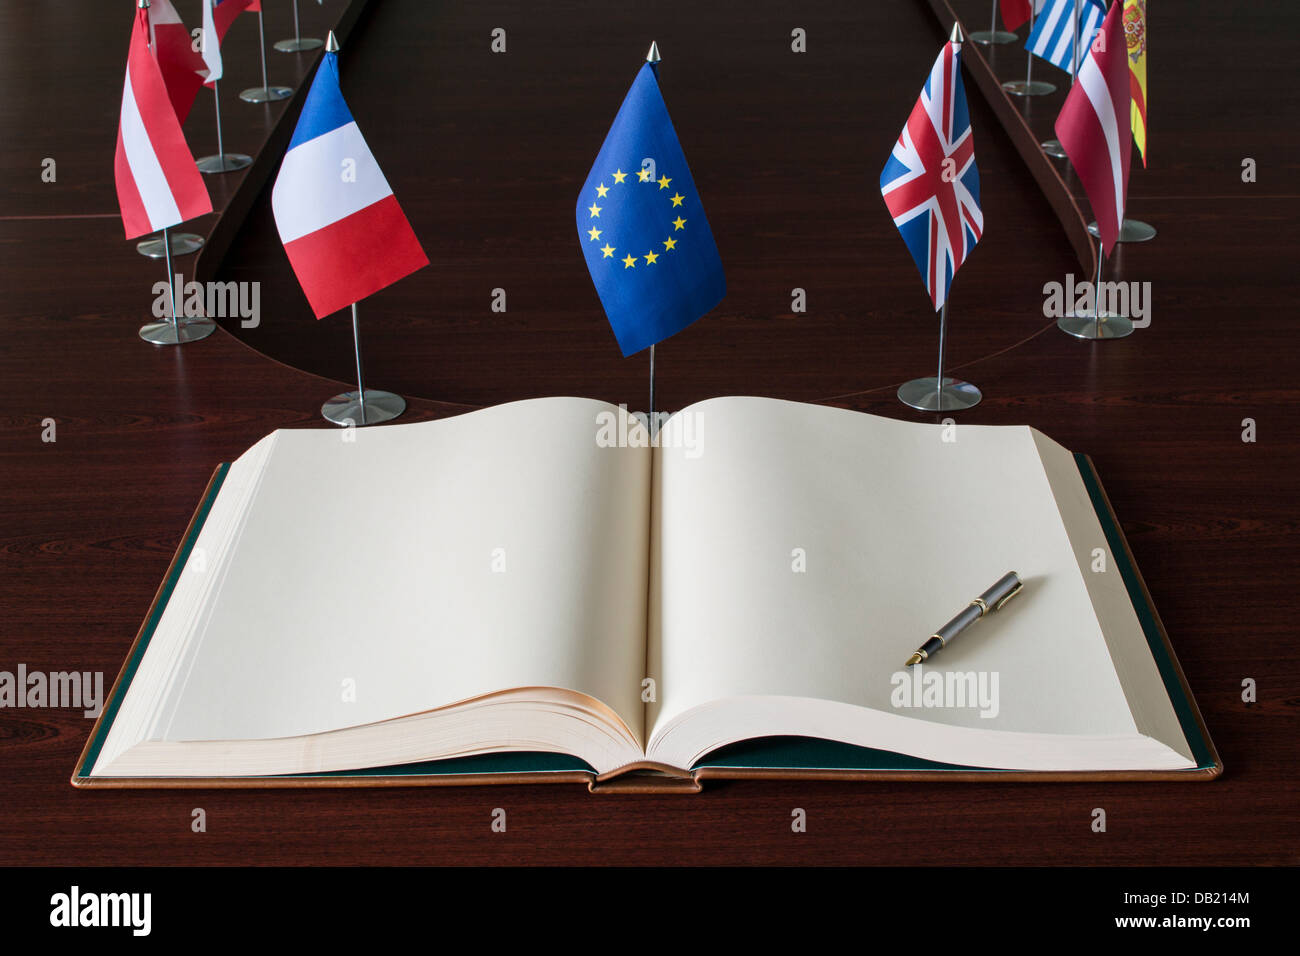 Propagation ouverte livre, stylo, l'Union européenne (UE) les drapeaux. Banque D'Images